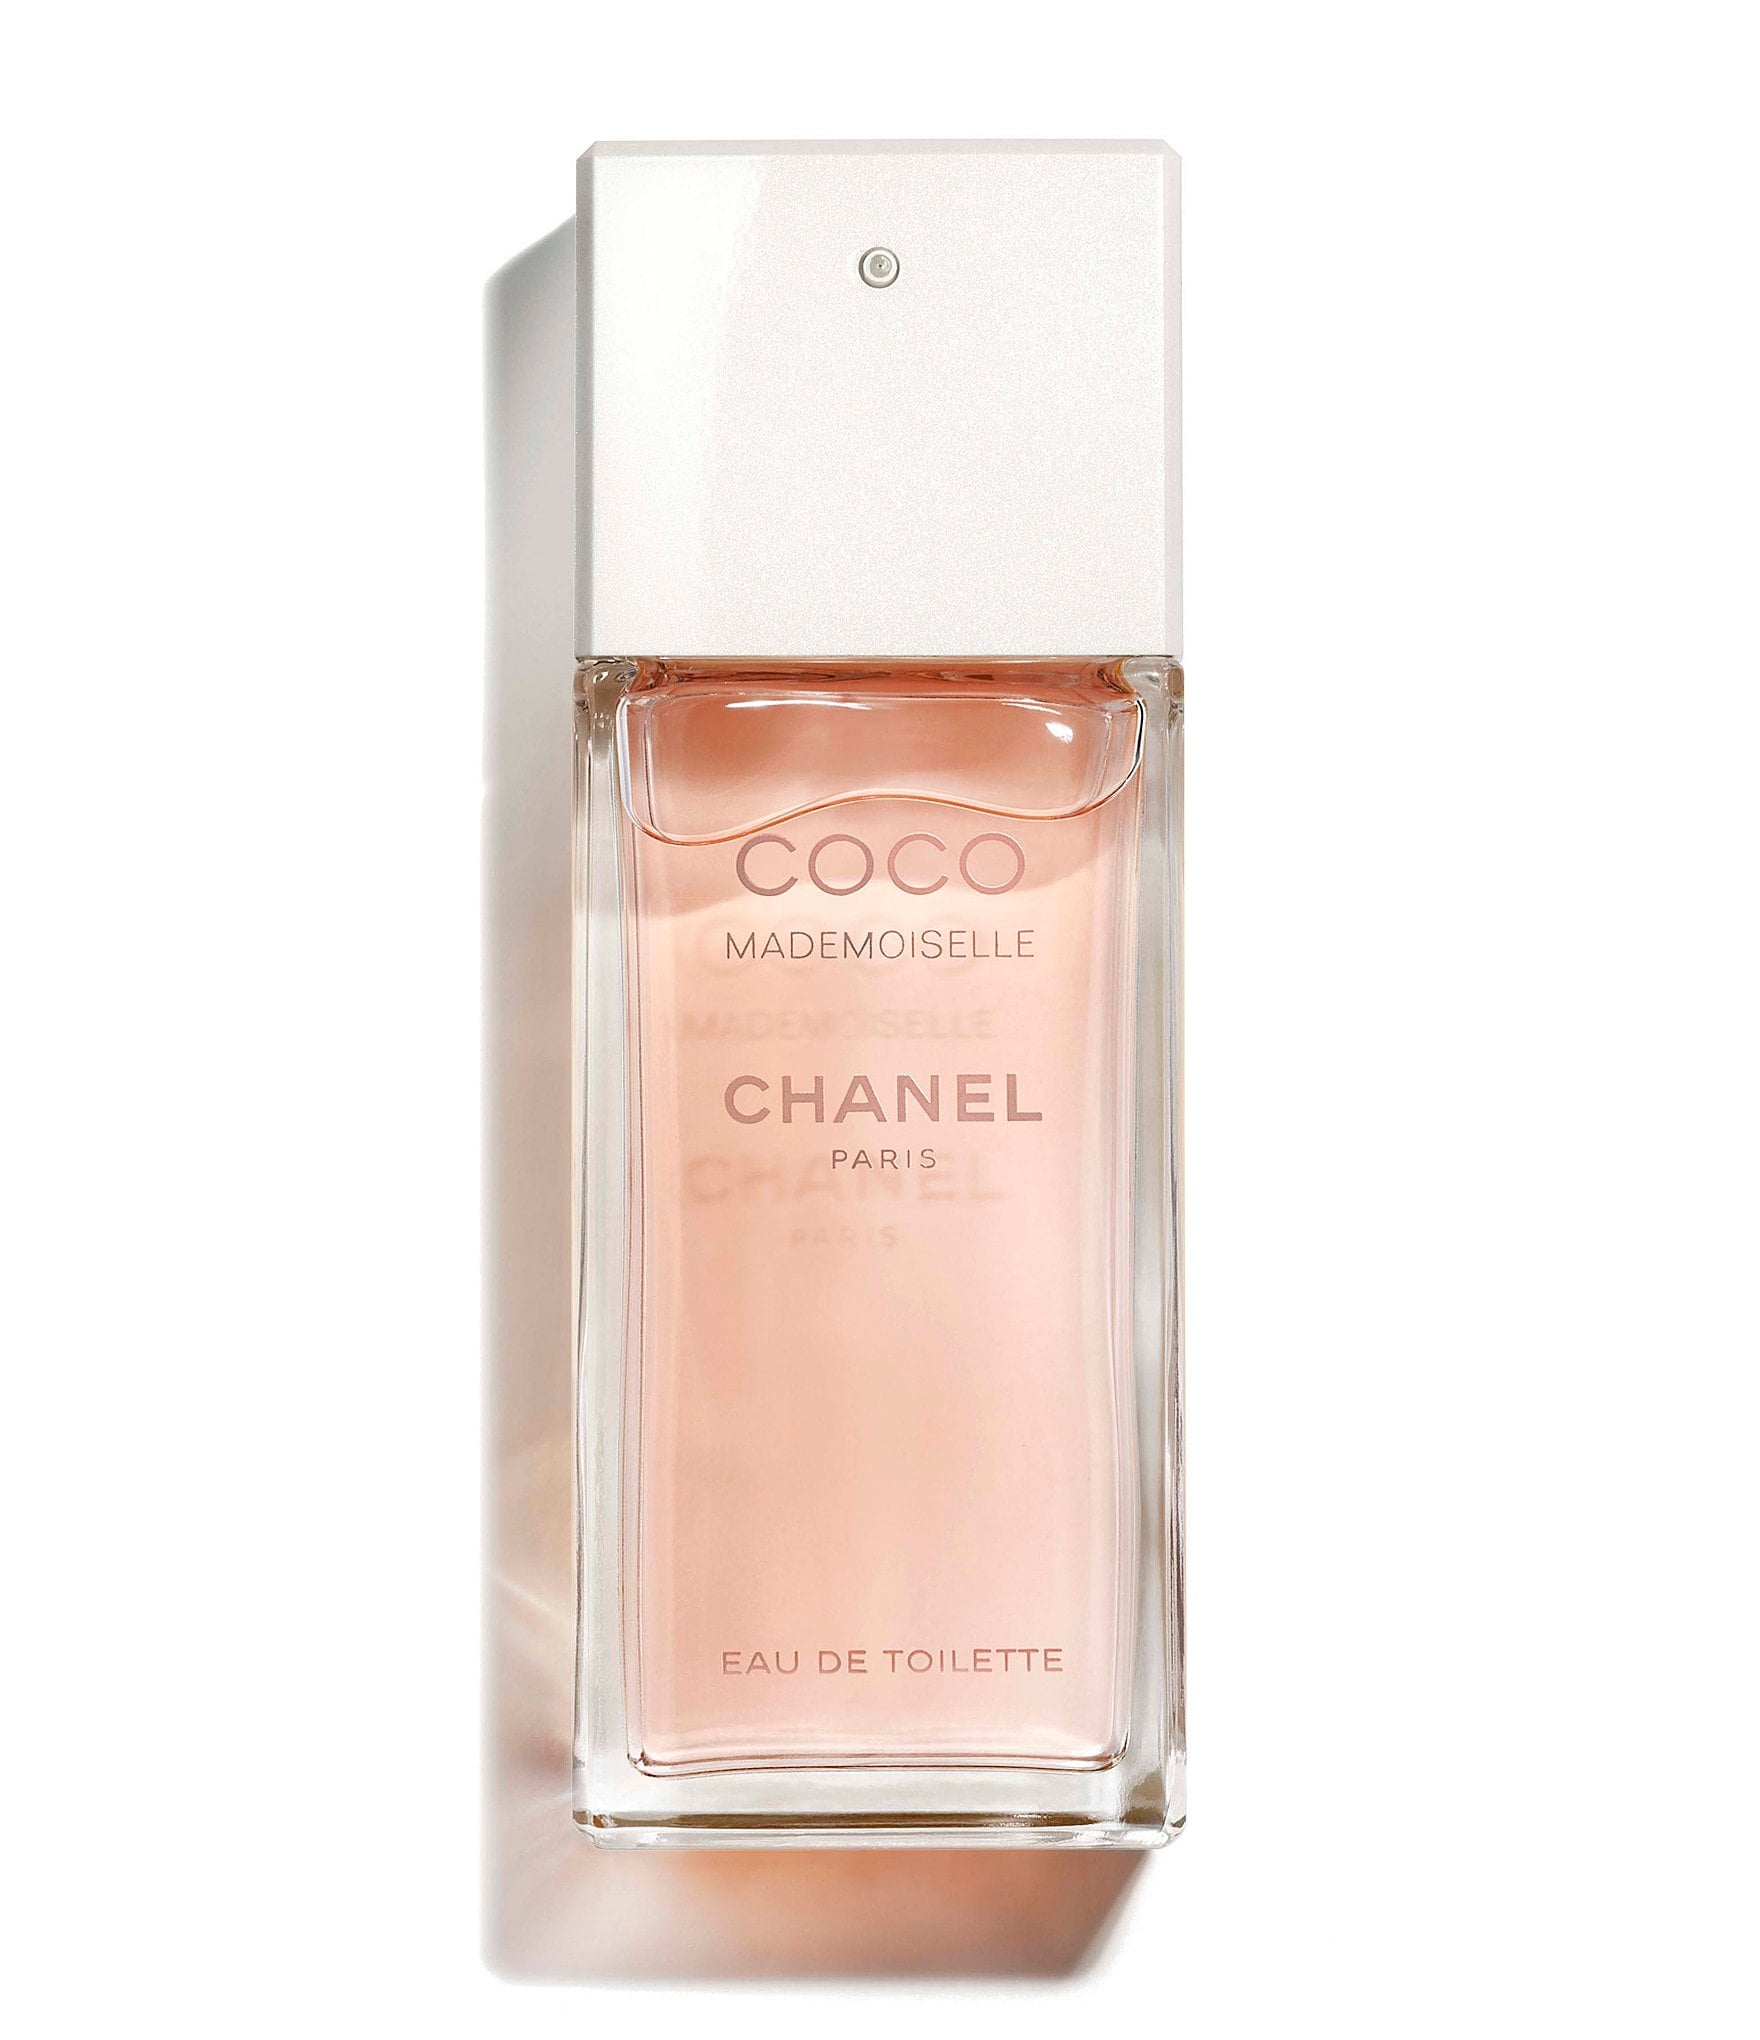 Chanel Coco Mademoiselle. #chanel #edp #edt #eaudetoilette